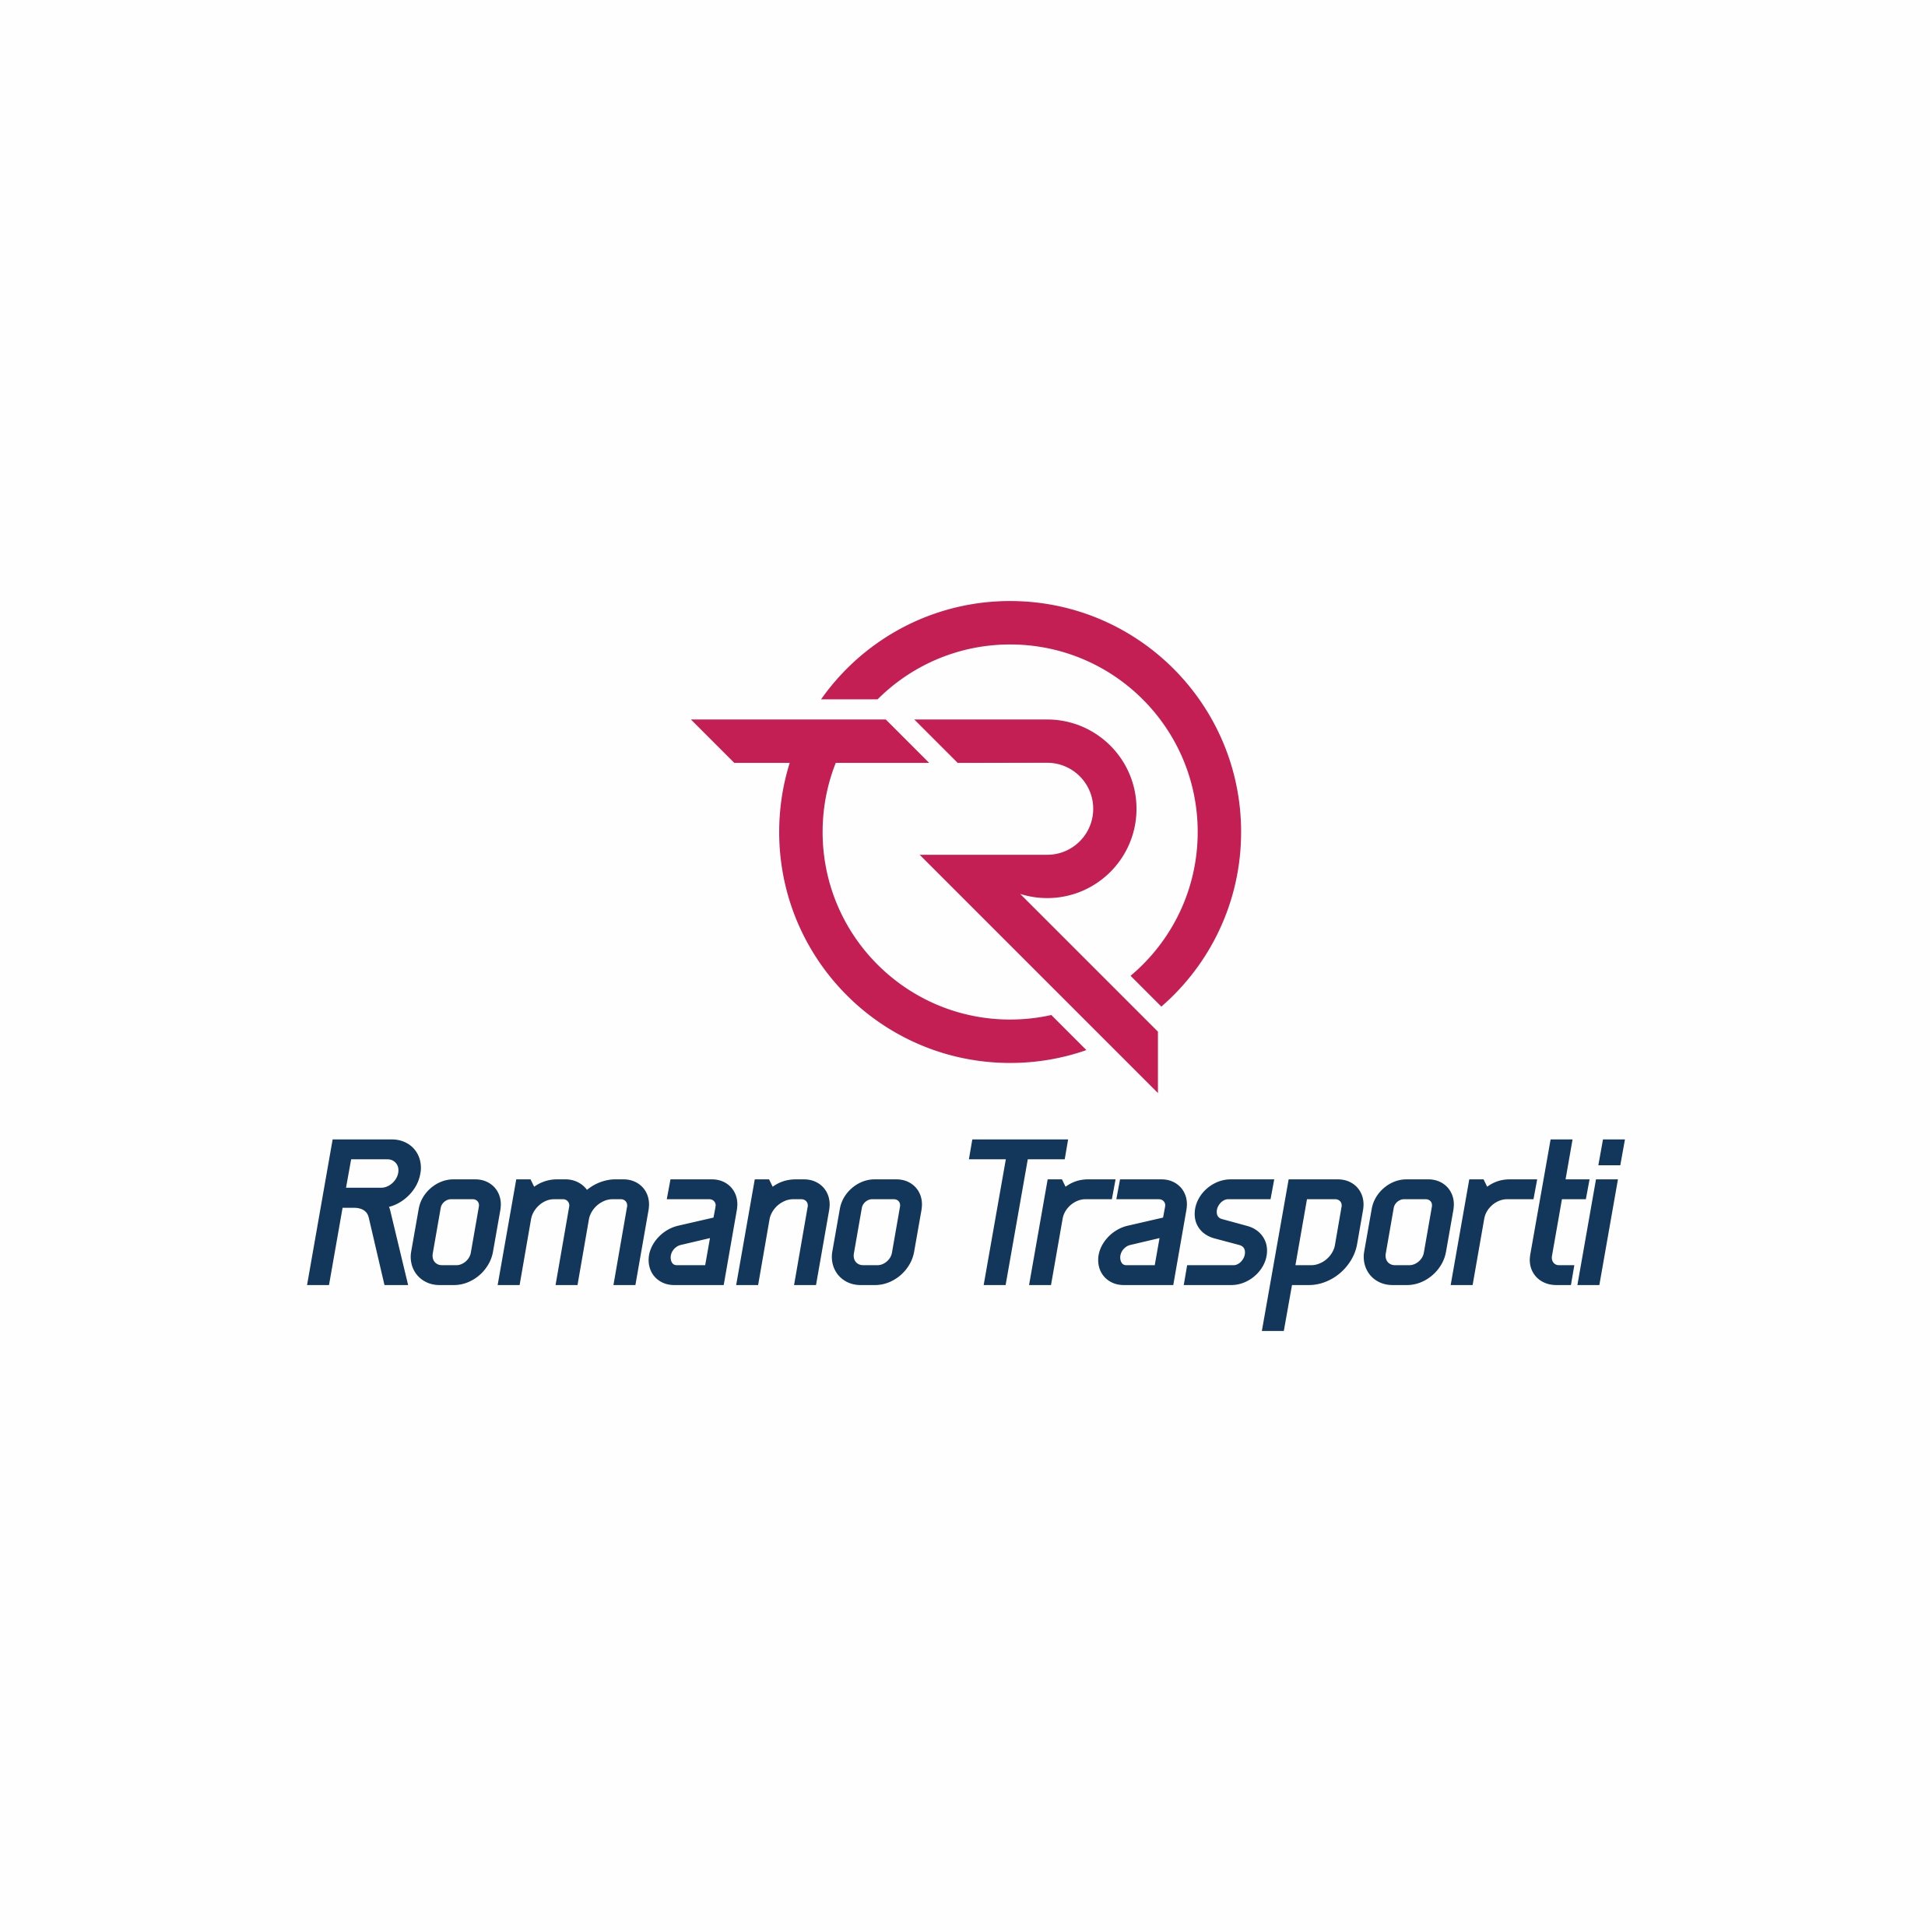 Romano Trasporti